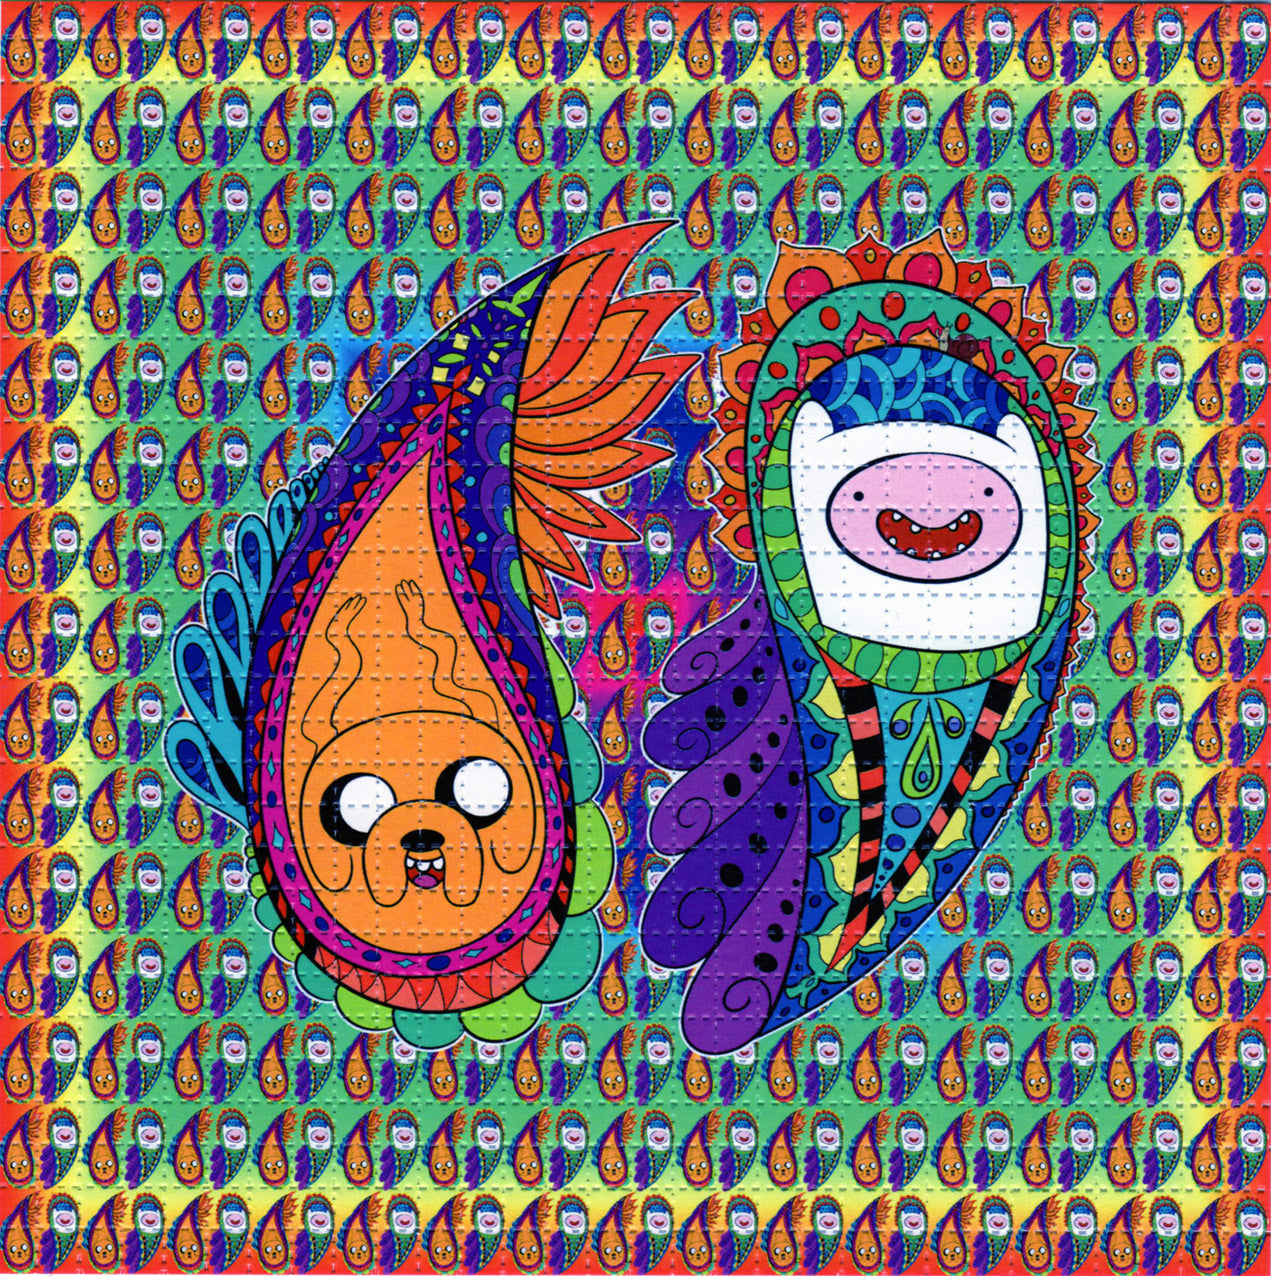 Time for Paisley Adventures LSD blotter art print